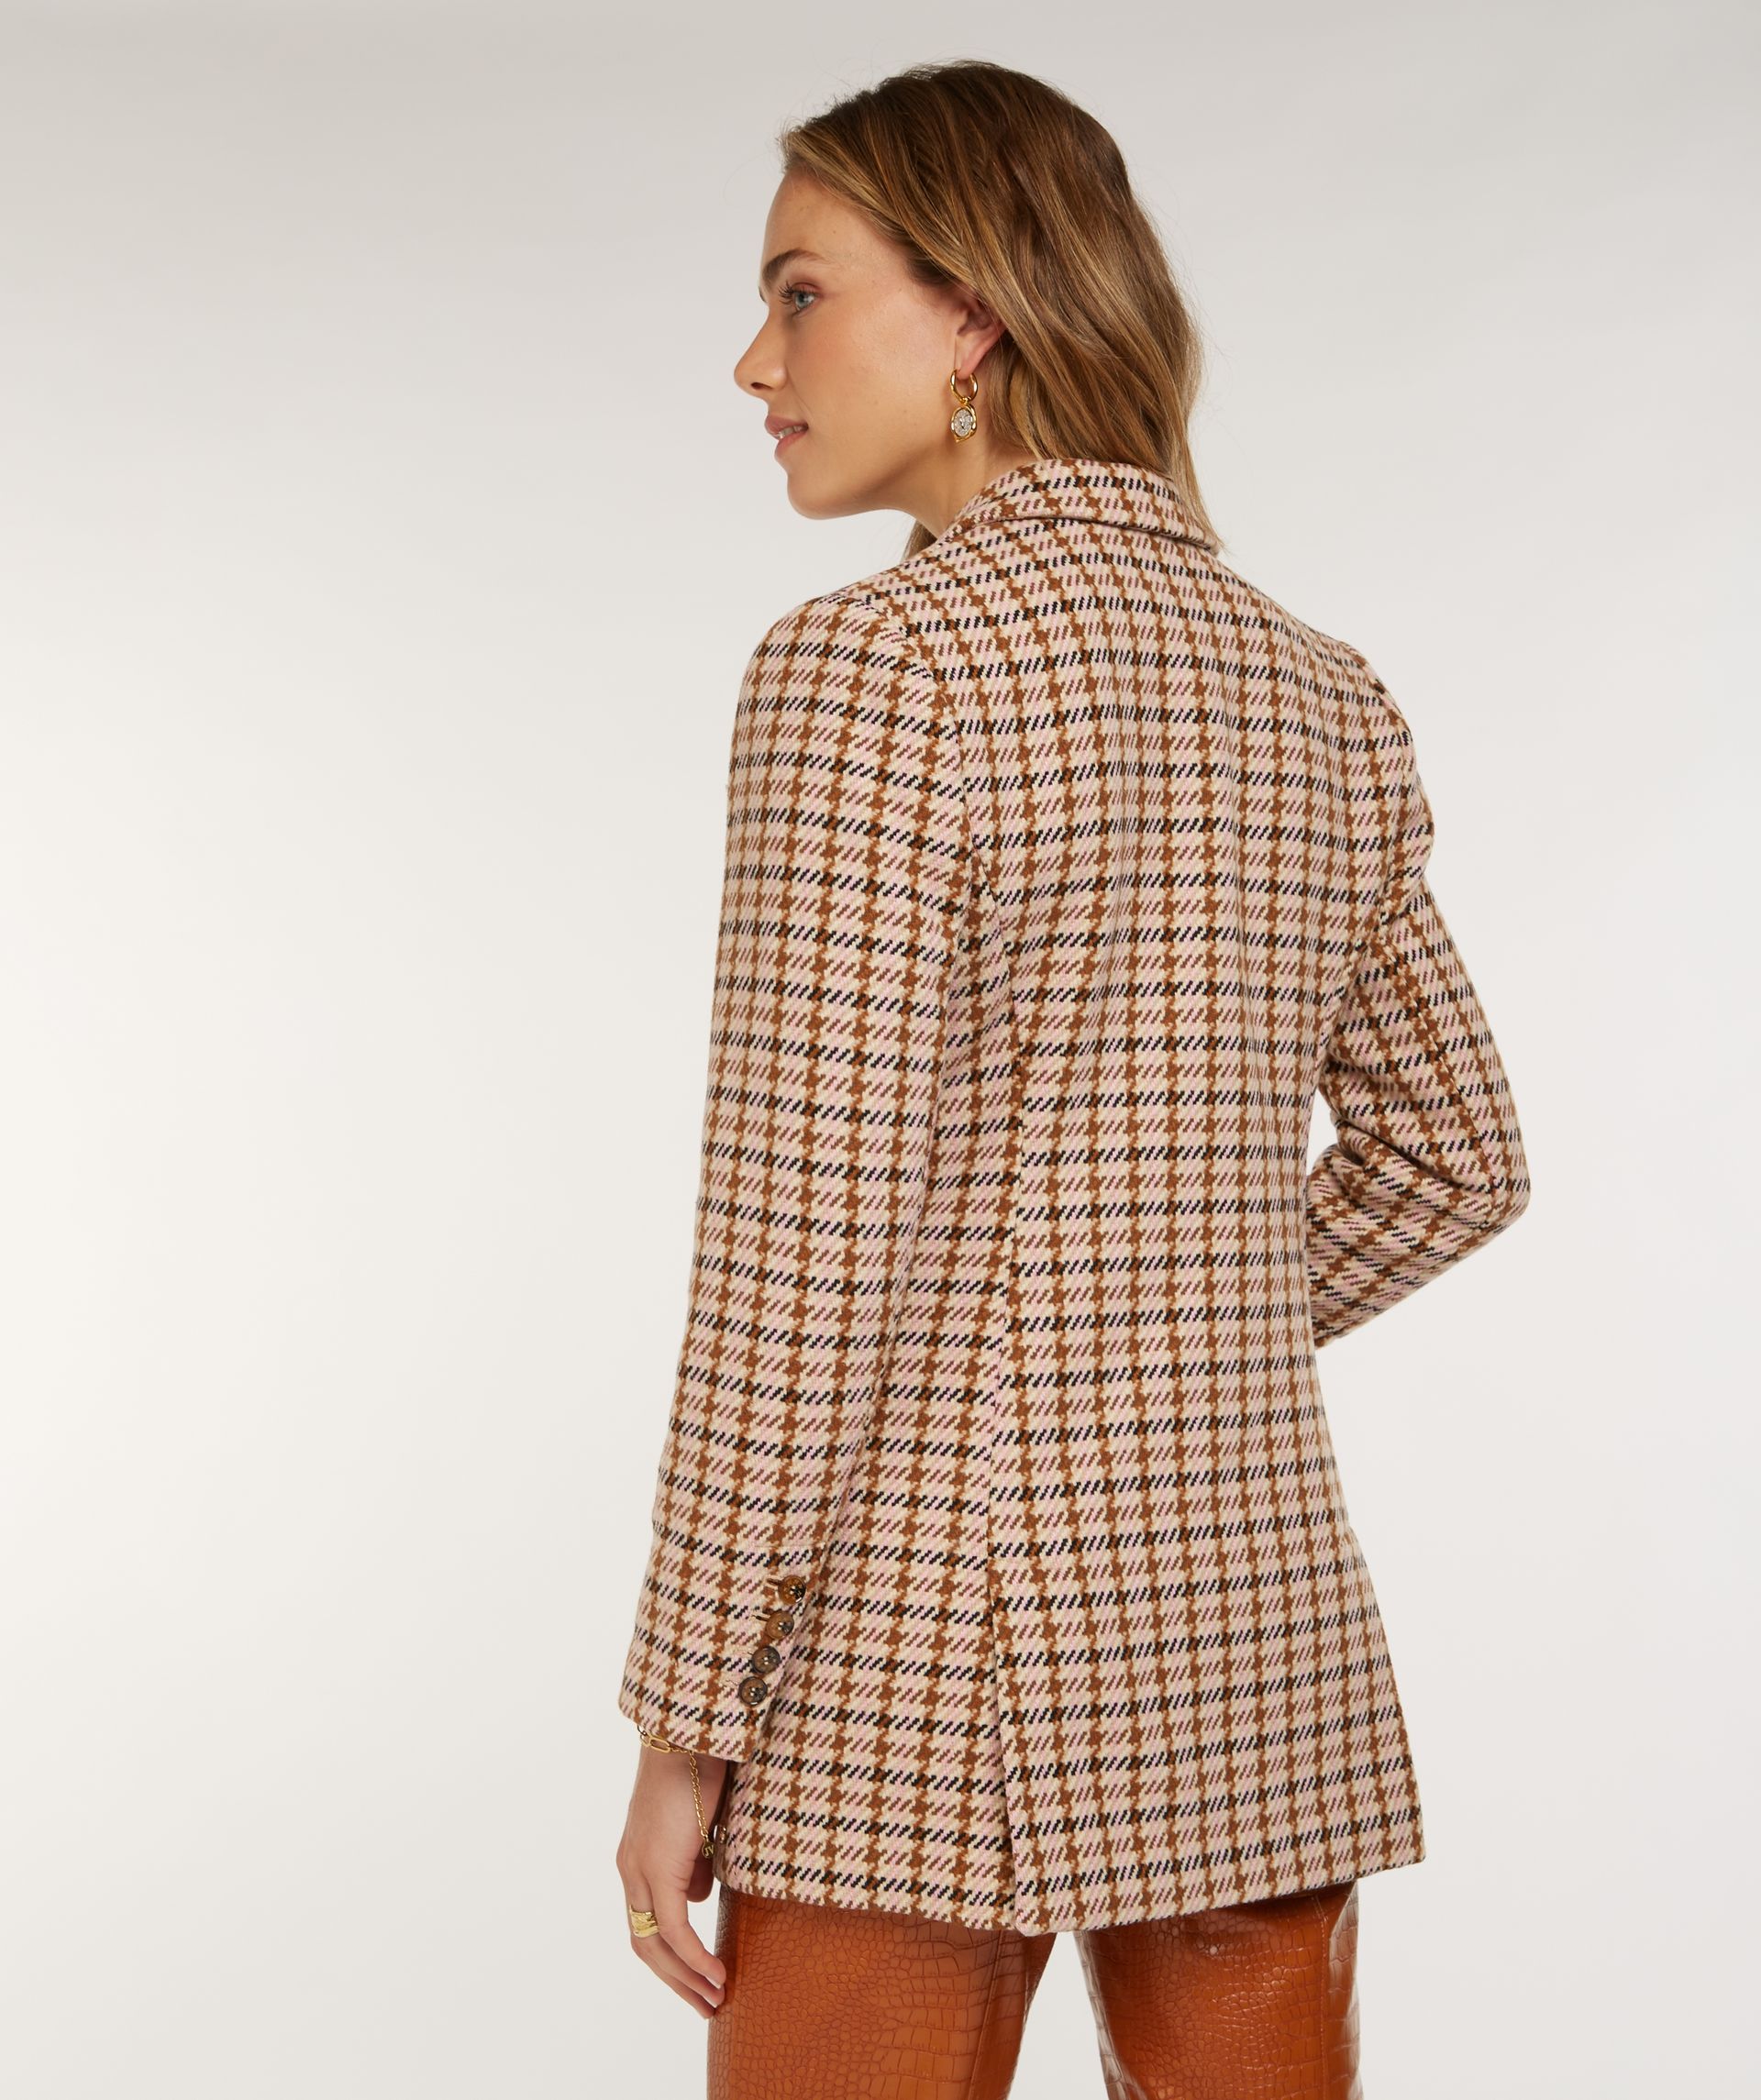 MARLOT oversized blazer with pied-de-poule design